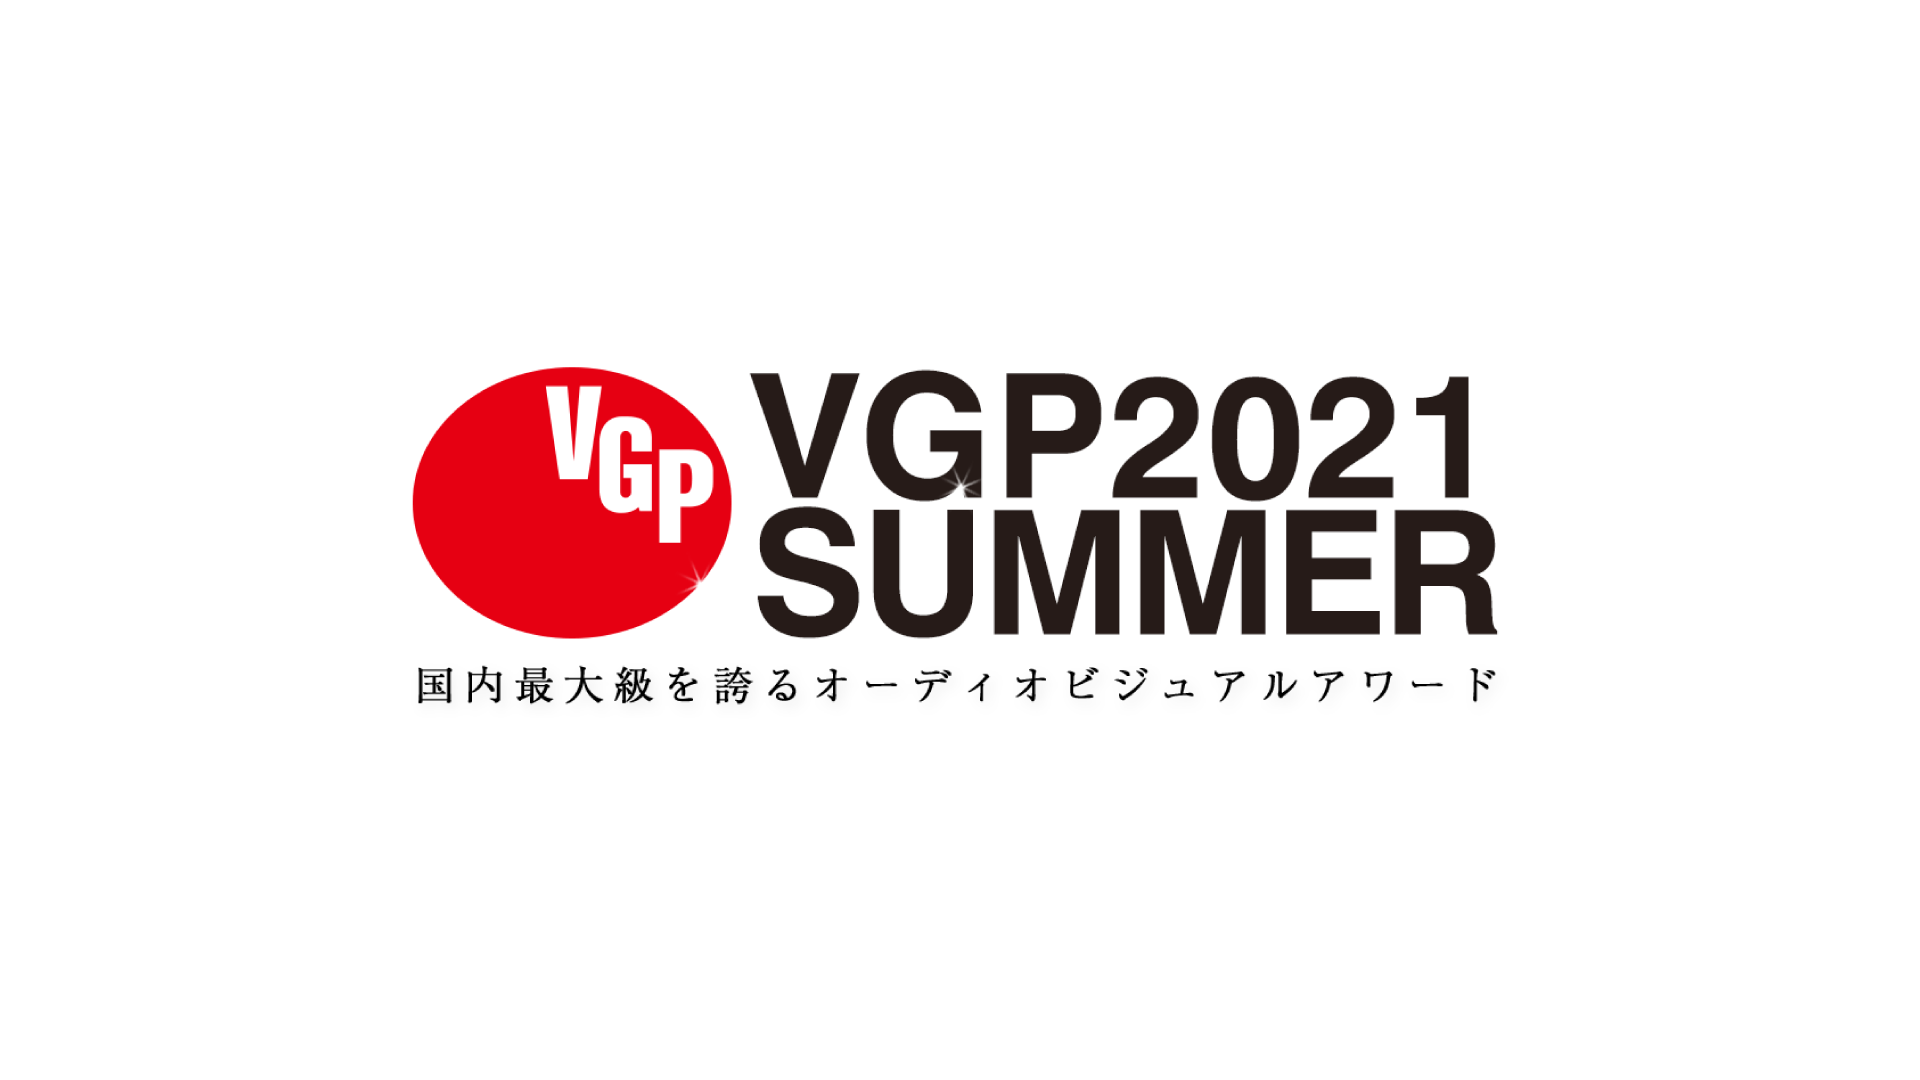 VGP2021 SUMMER